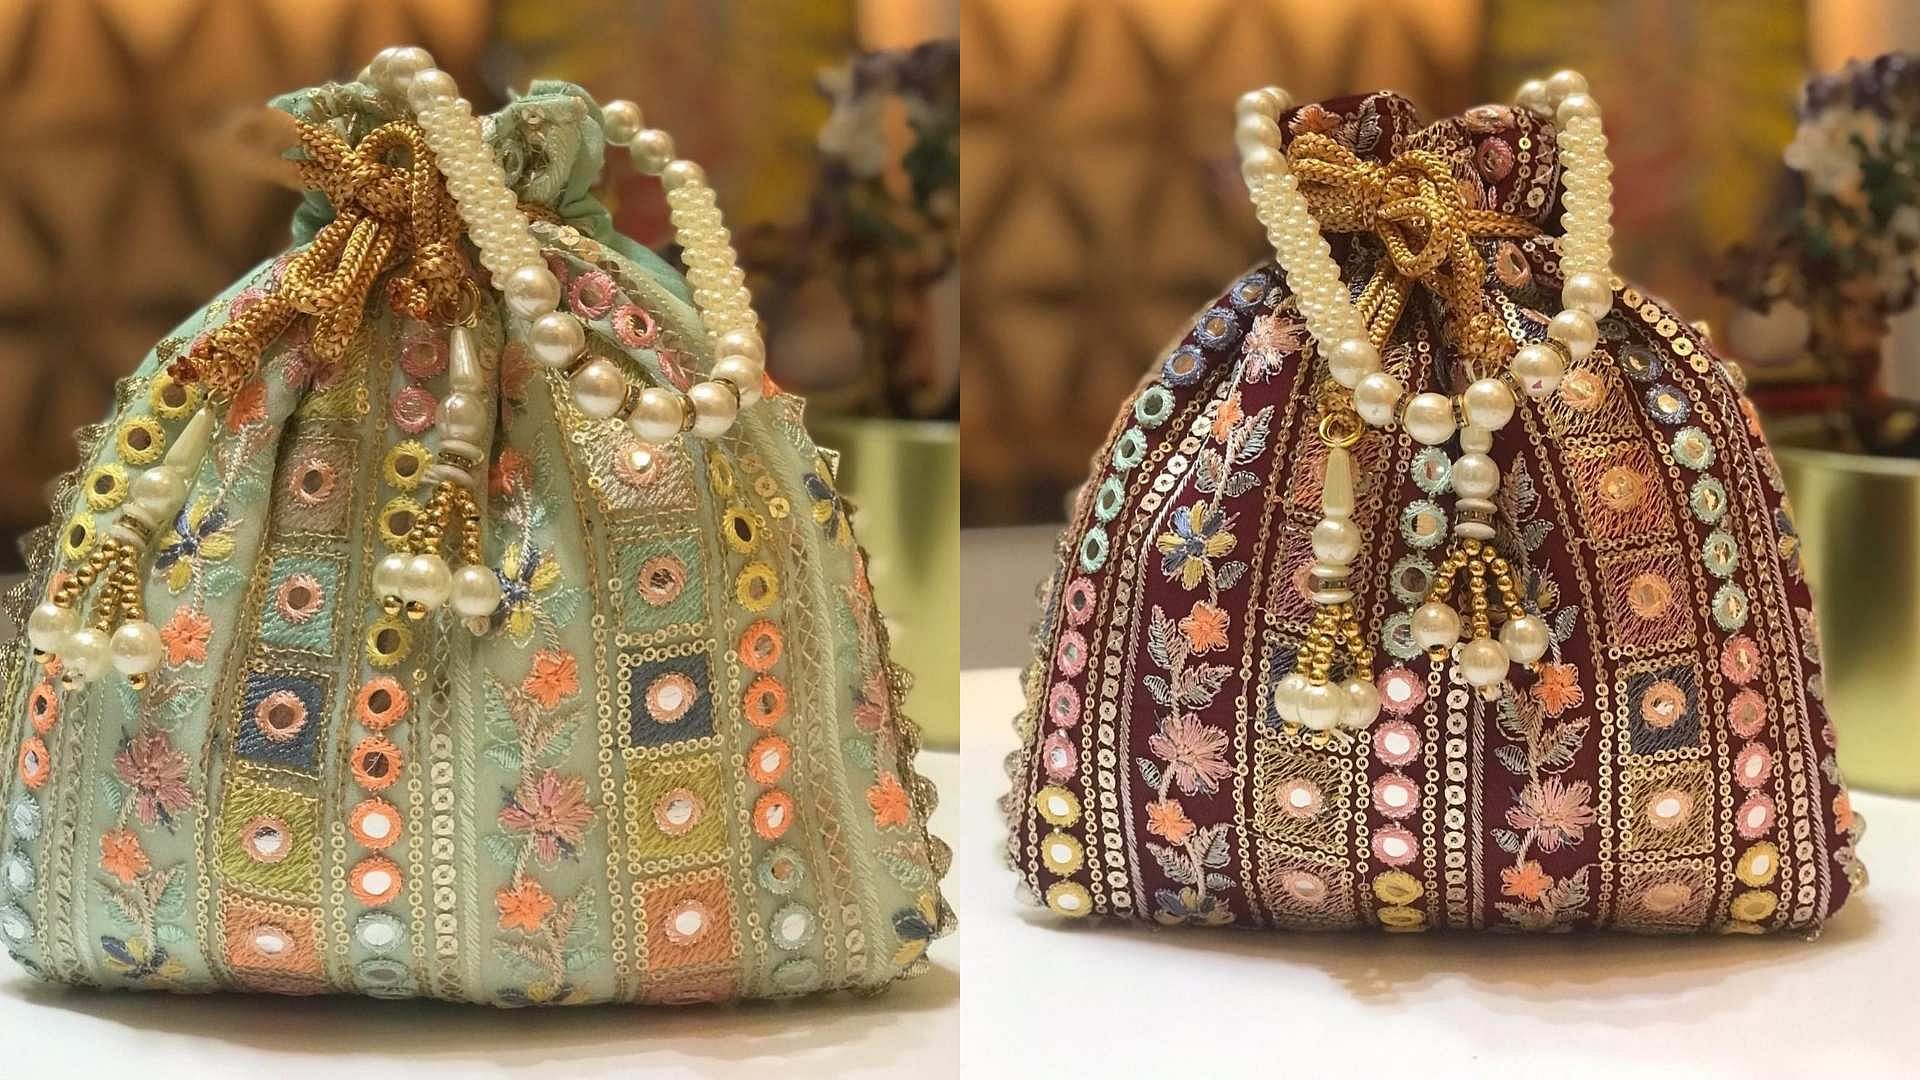 Shop Stylish Potli Bags and Handbags Online at Rubans